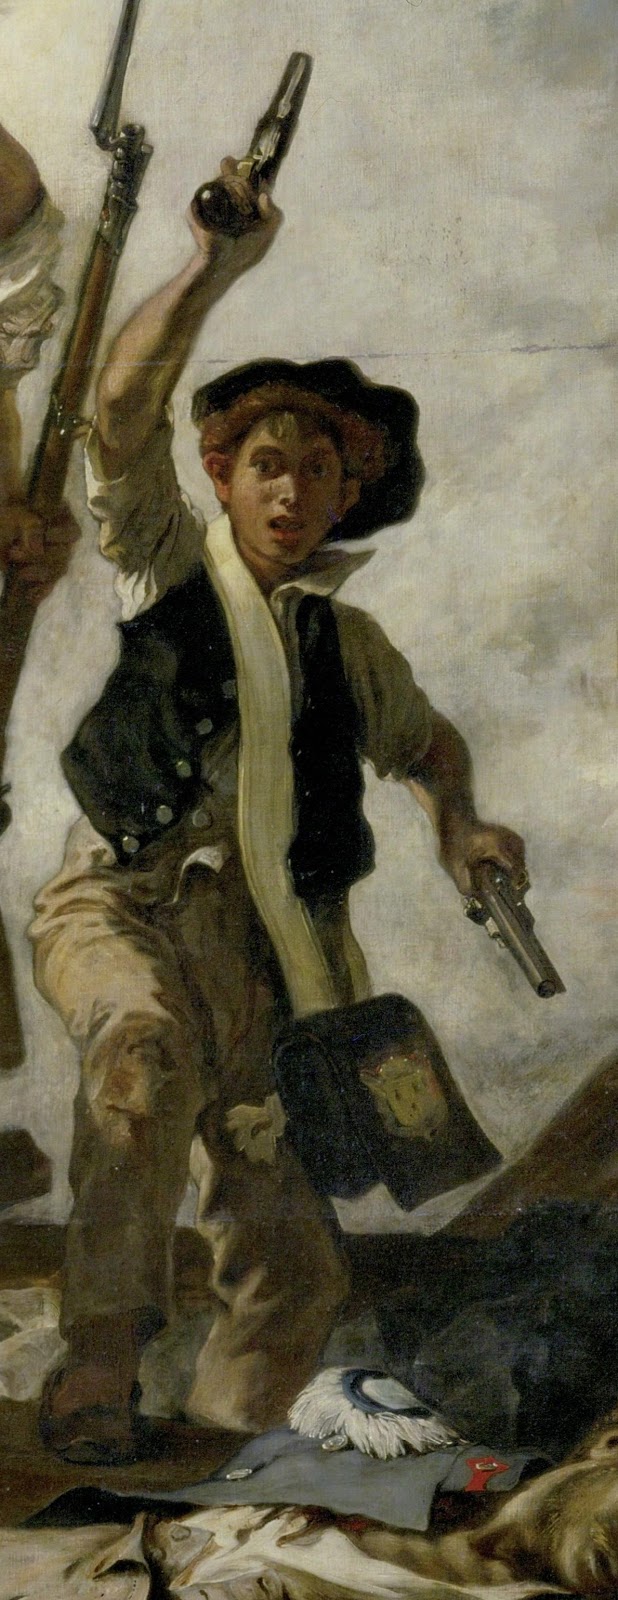 Eugene+Delacroix-1798-1863 (149).jpg